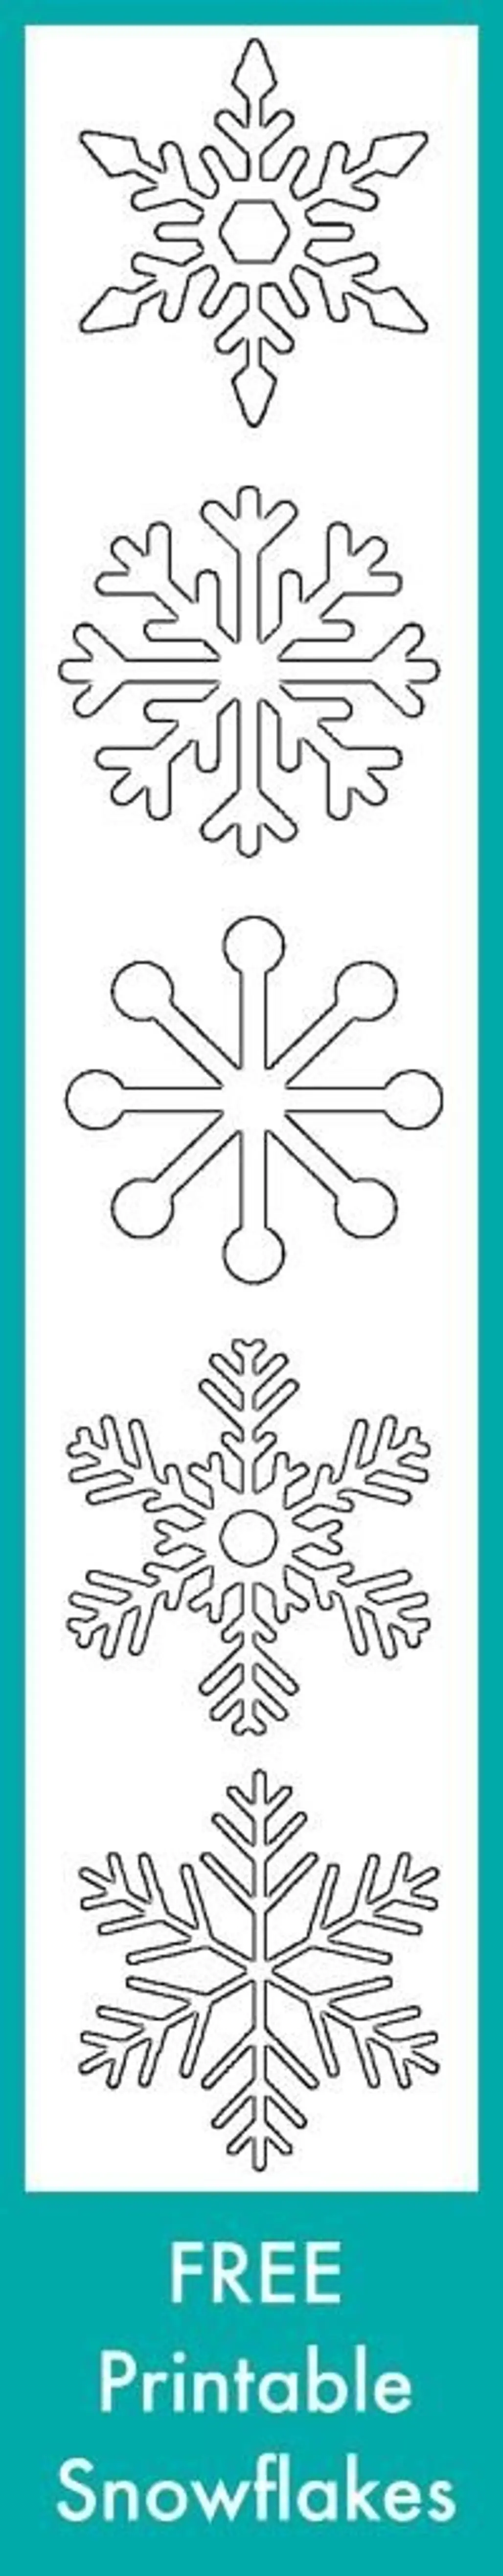 Free Printable Snowflakes